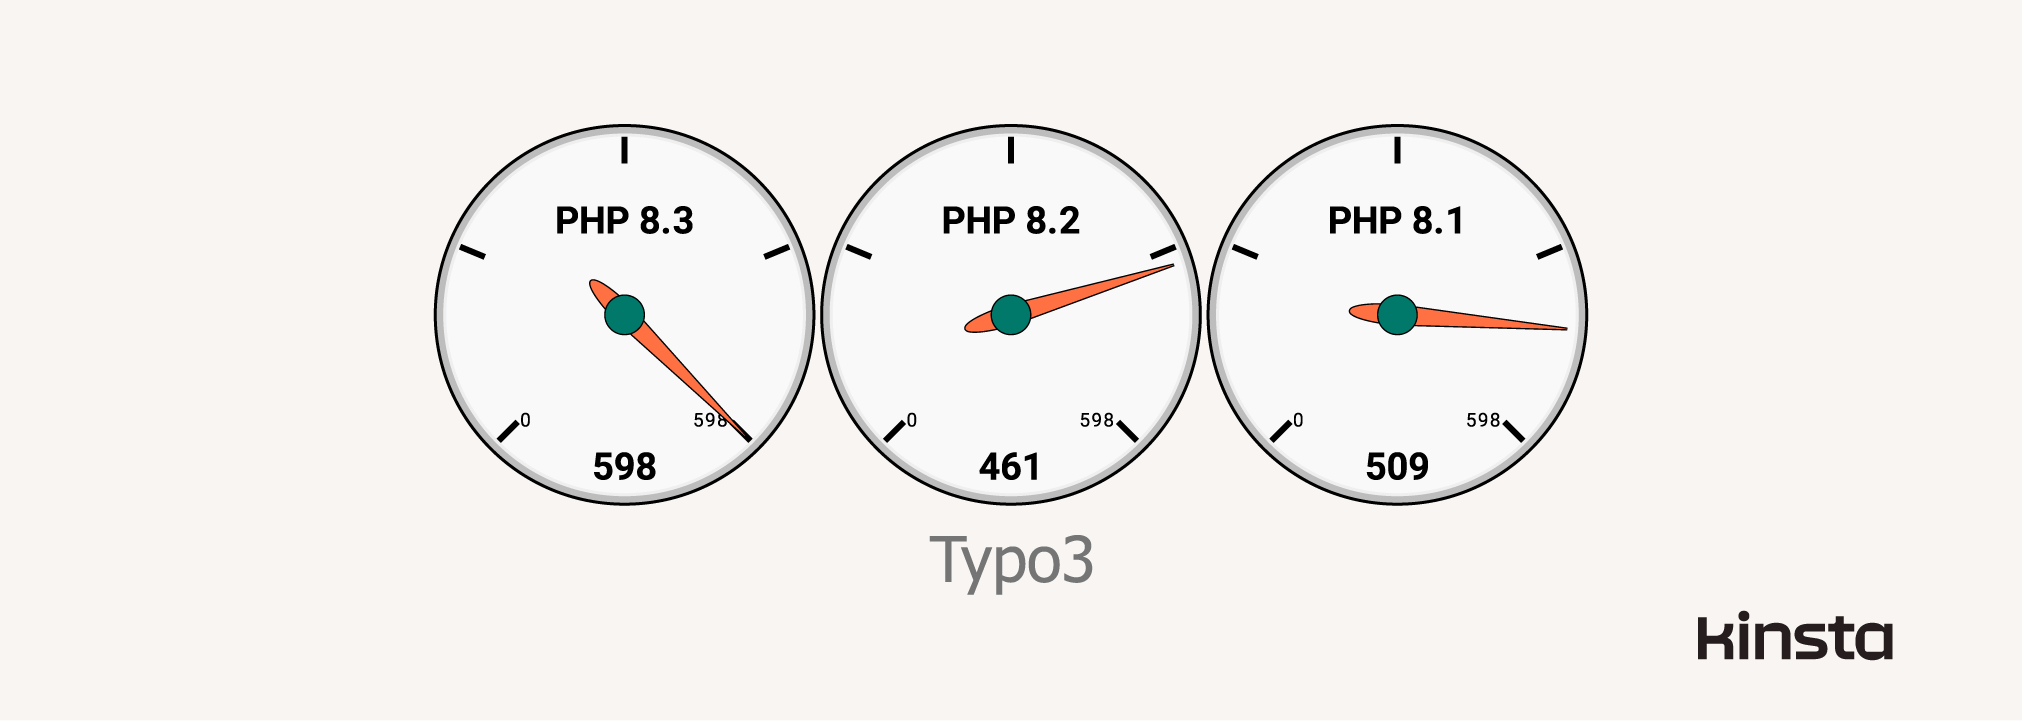 Typo3 12.4.4 Leistung mit PHP 8.1, 8.2 und 8.3 (in Anfragen/Sekunde)